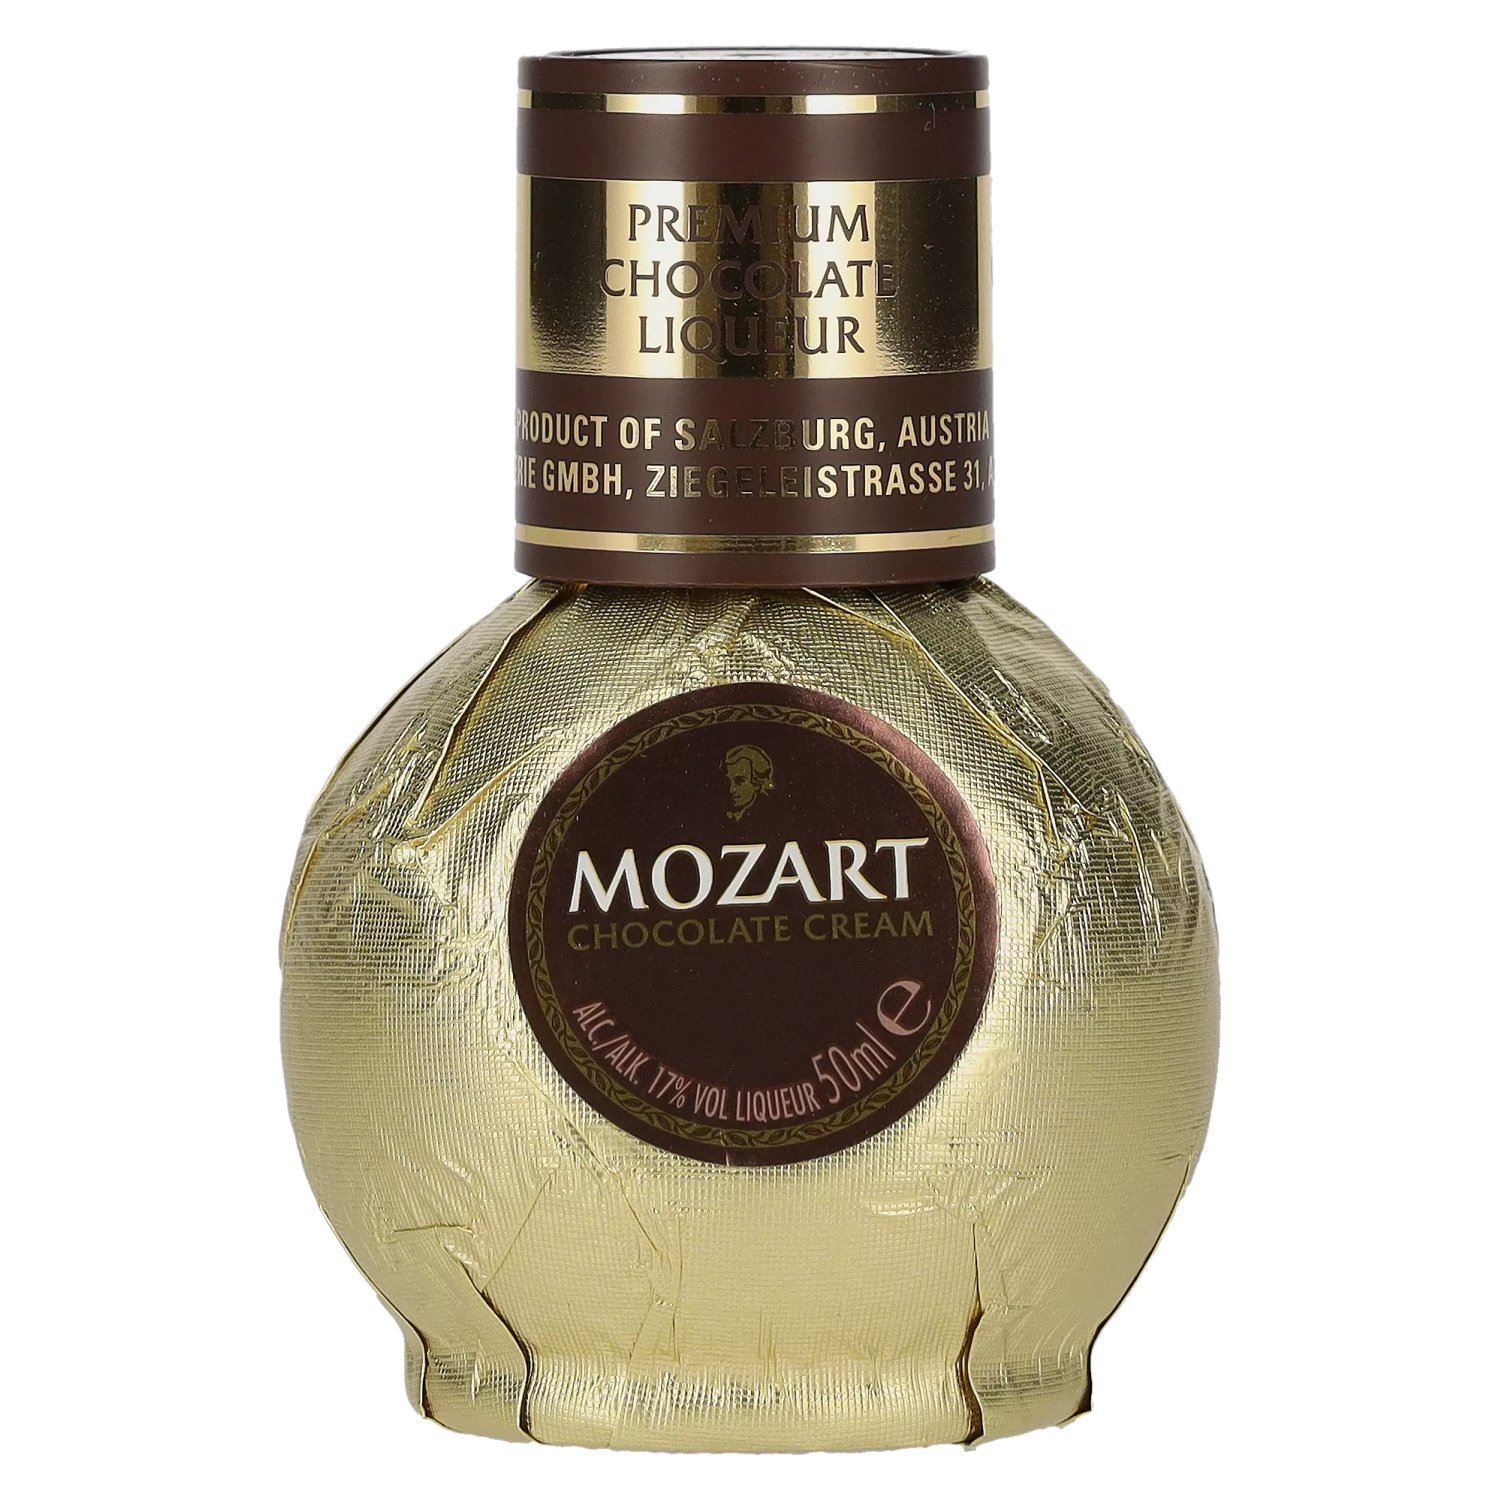 Mozart Gold Chocolate Cream 17% Vol. - 0,05l delicando